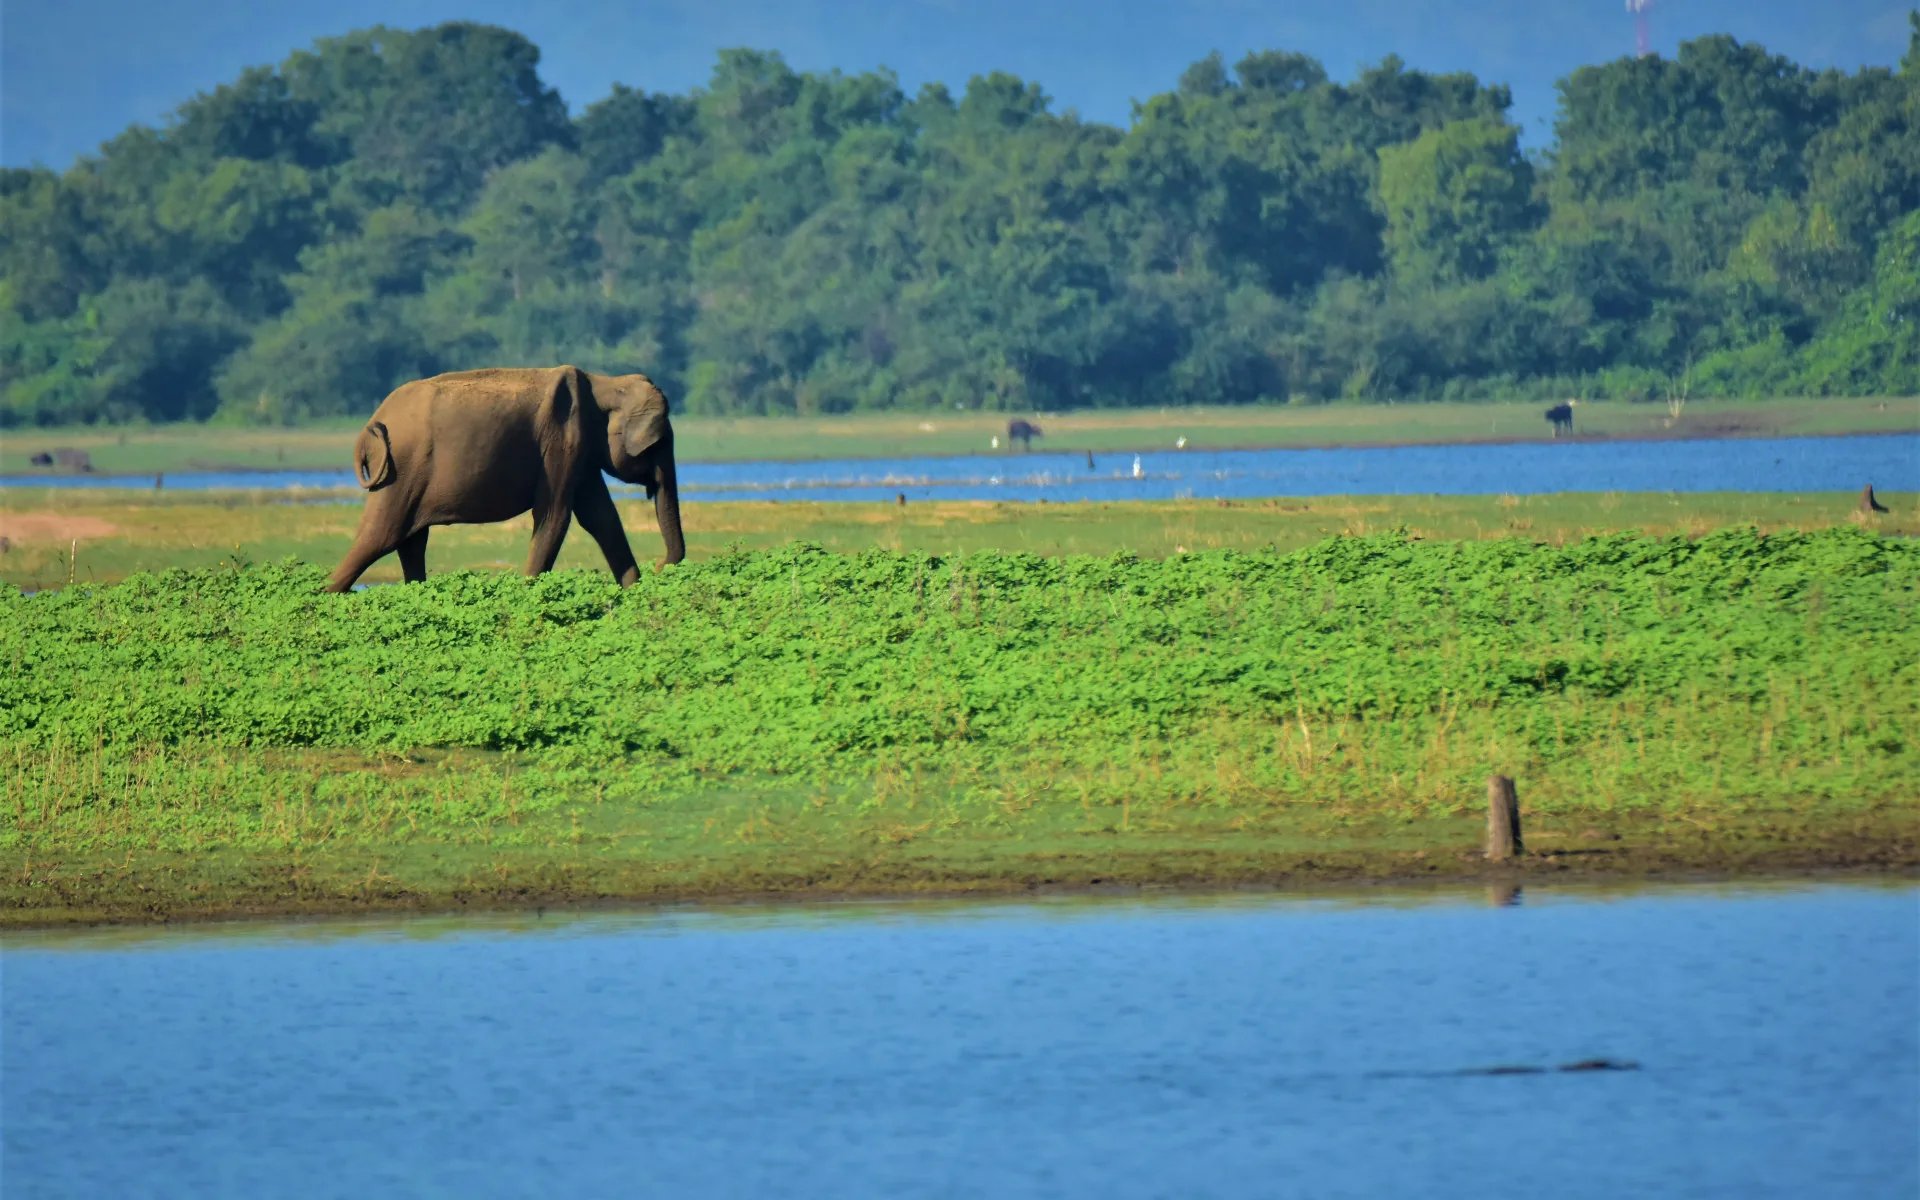 A large elephant is walking across a lush green field.